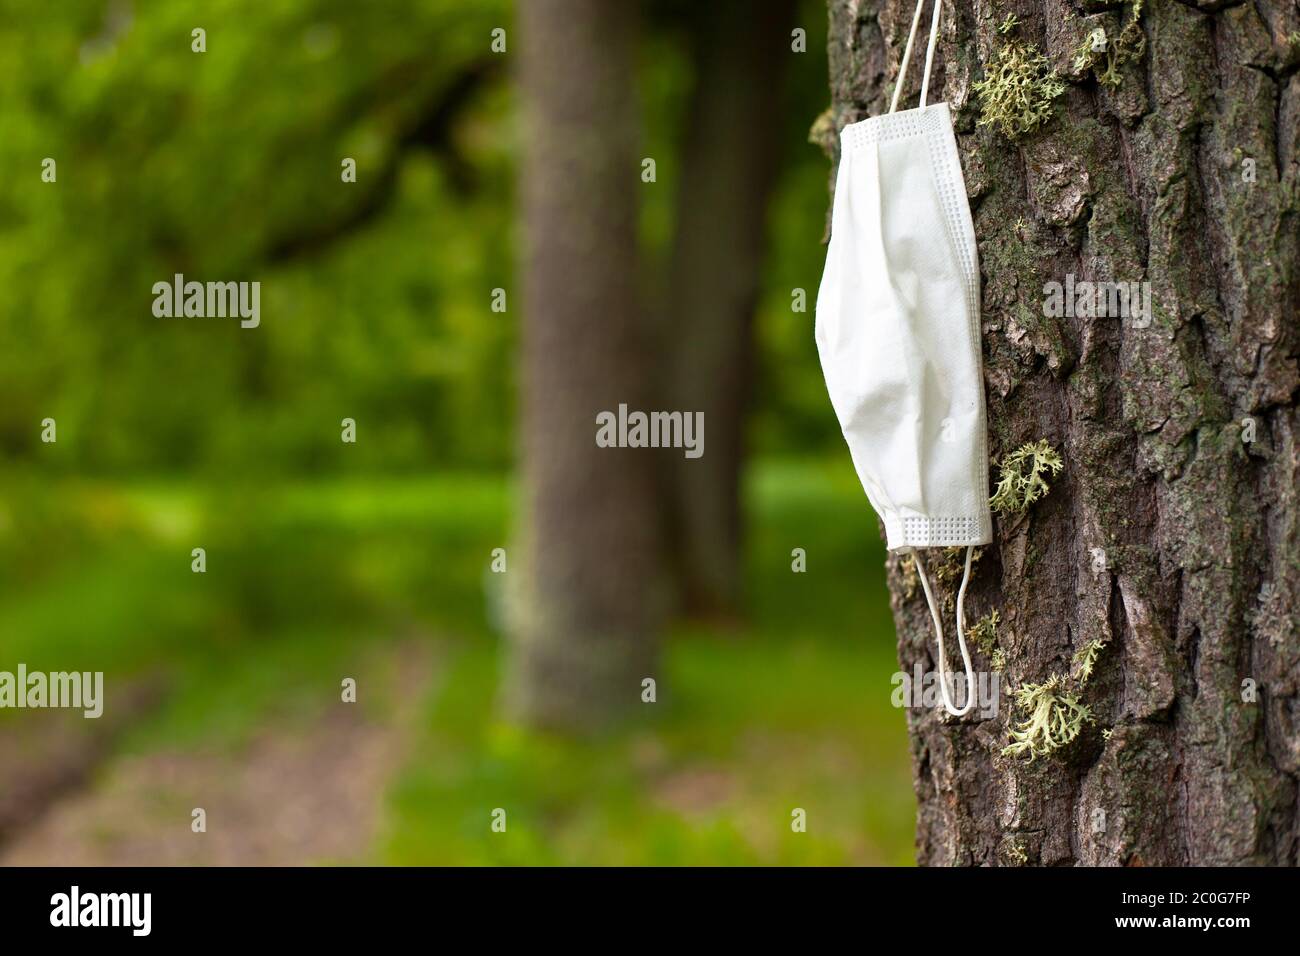 maschera medica su albero, epidemia virale e danno alla natura, problema ecologico. Foto Stock